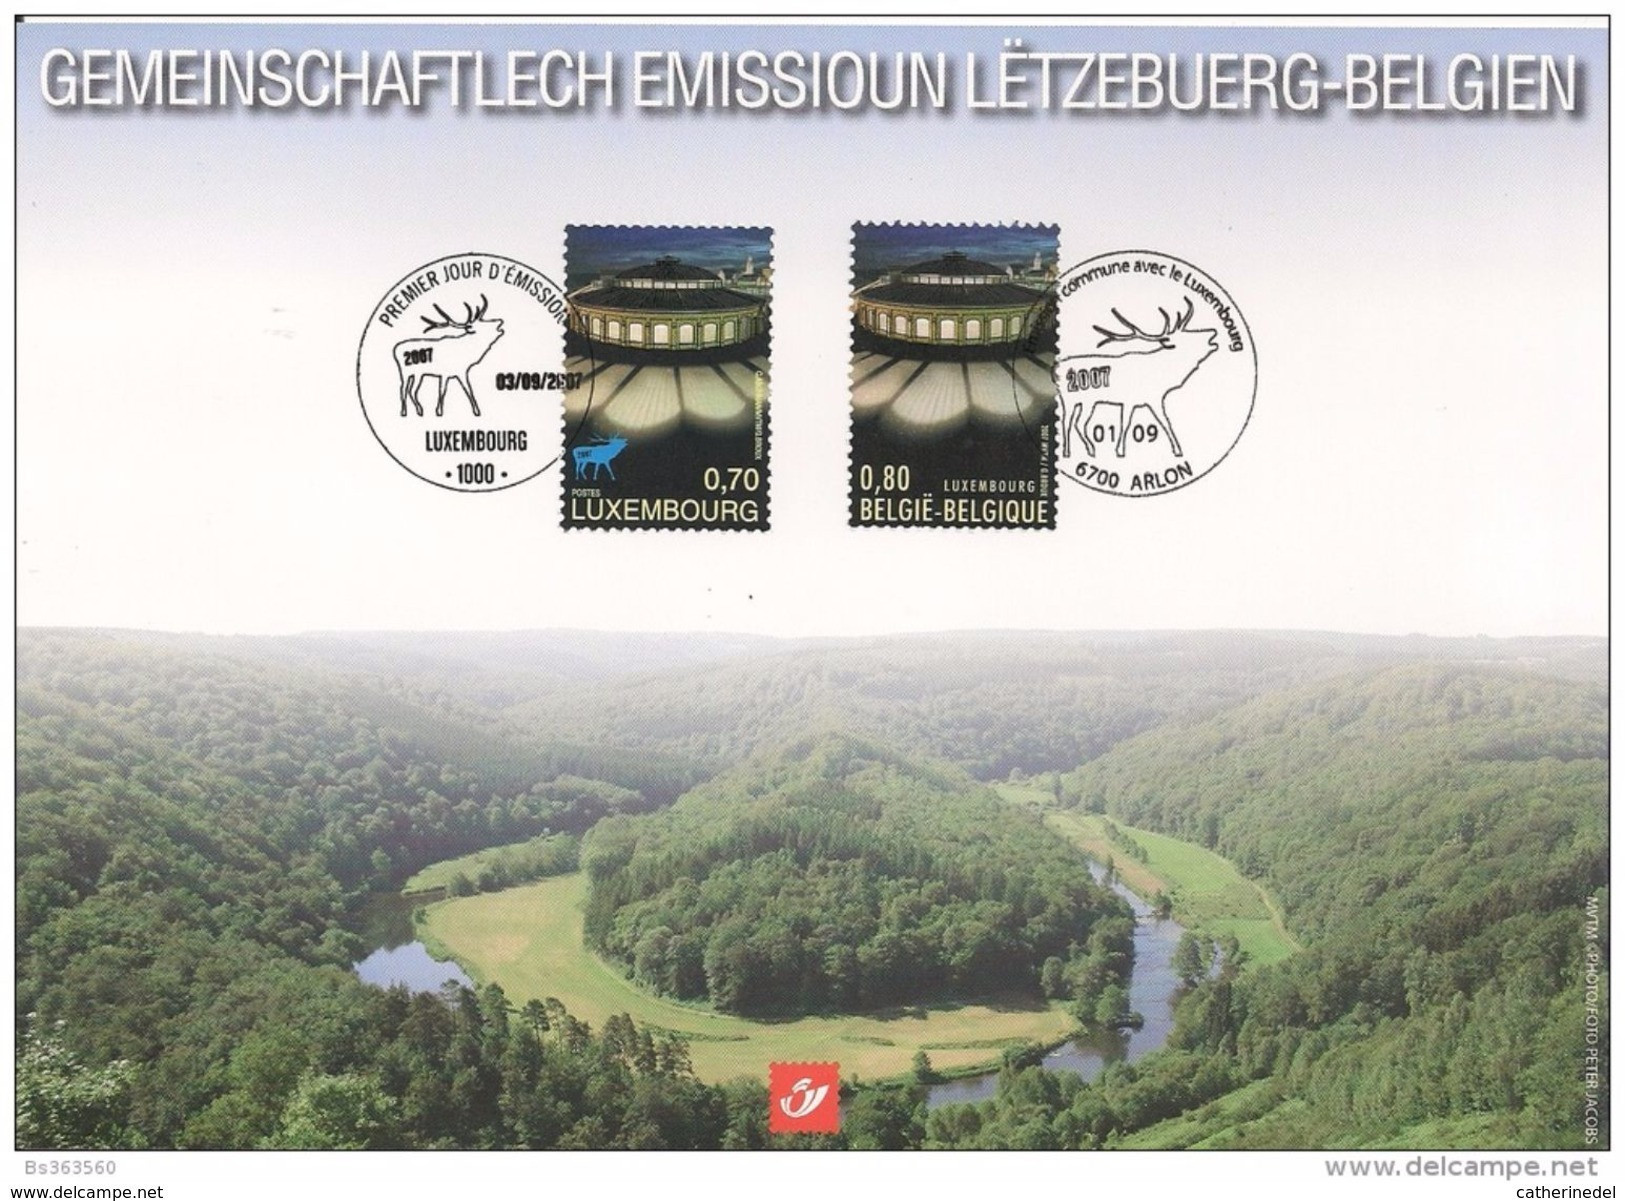 Année 2007 : Carte Souvenir 3676HK - Luxembourg Capitales Européenne De La Culture 2007 - Cartes Souvenir – Emissions Communes [HK]